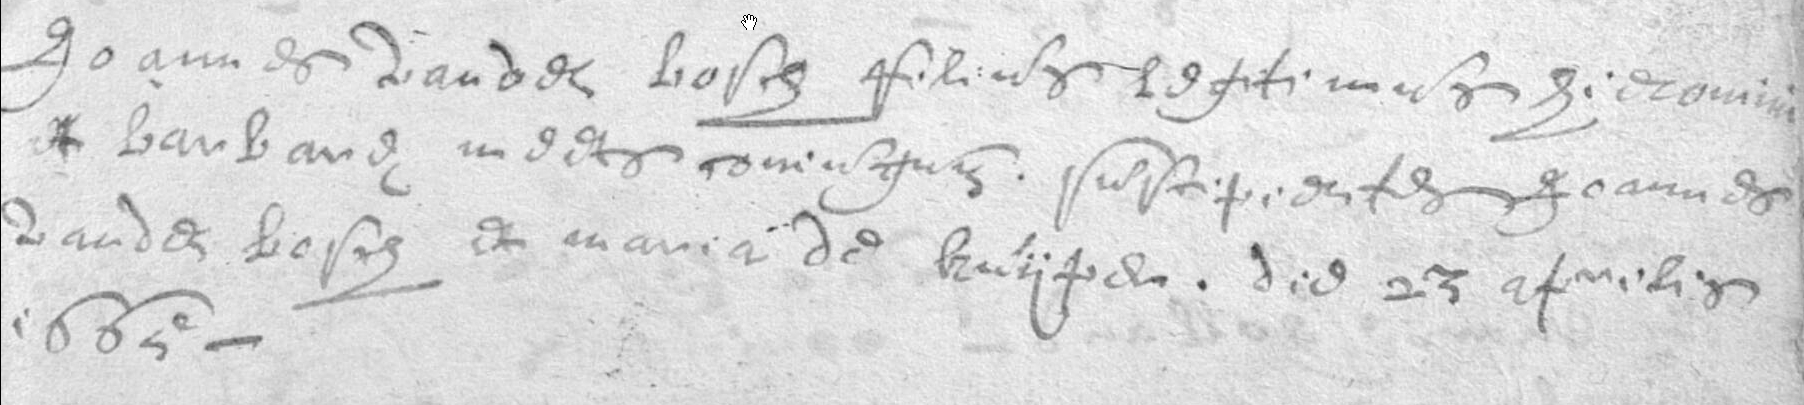 1665-JoannesVandenbosch23Apr1665HieronimusVandenboschBarbaraMeerts.jpg